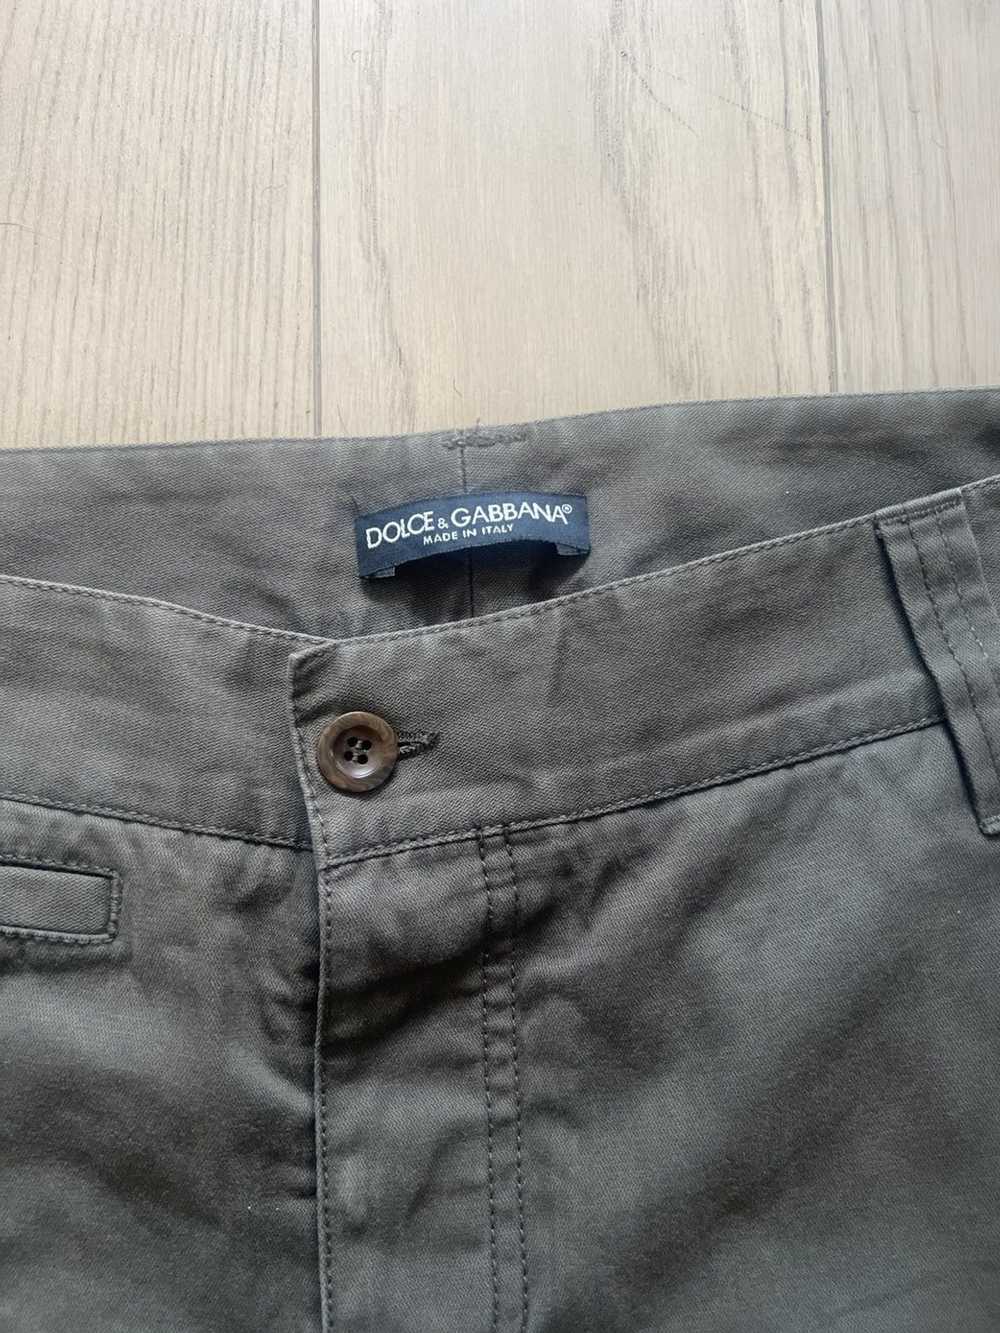 Dolce & Gabbana Dolce & Gabbana Cargo Pants 30-32 - image 3